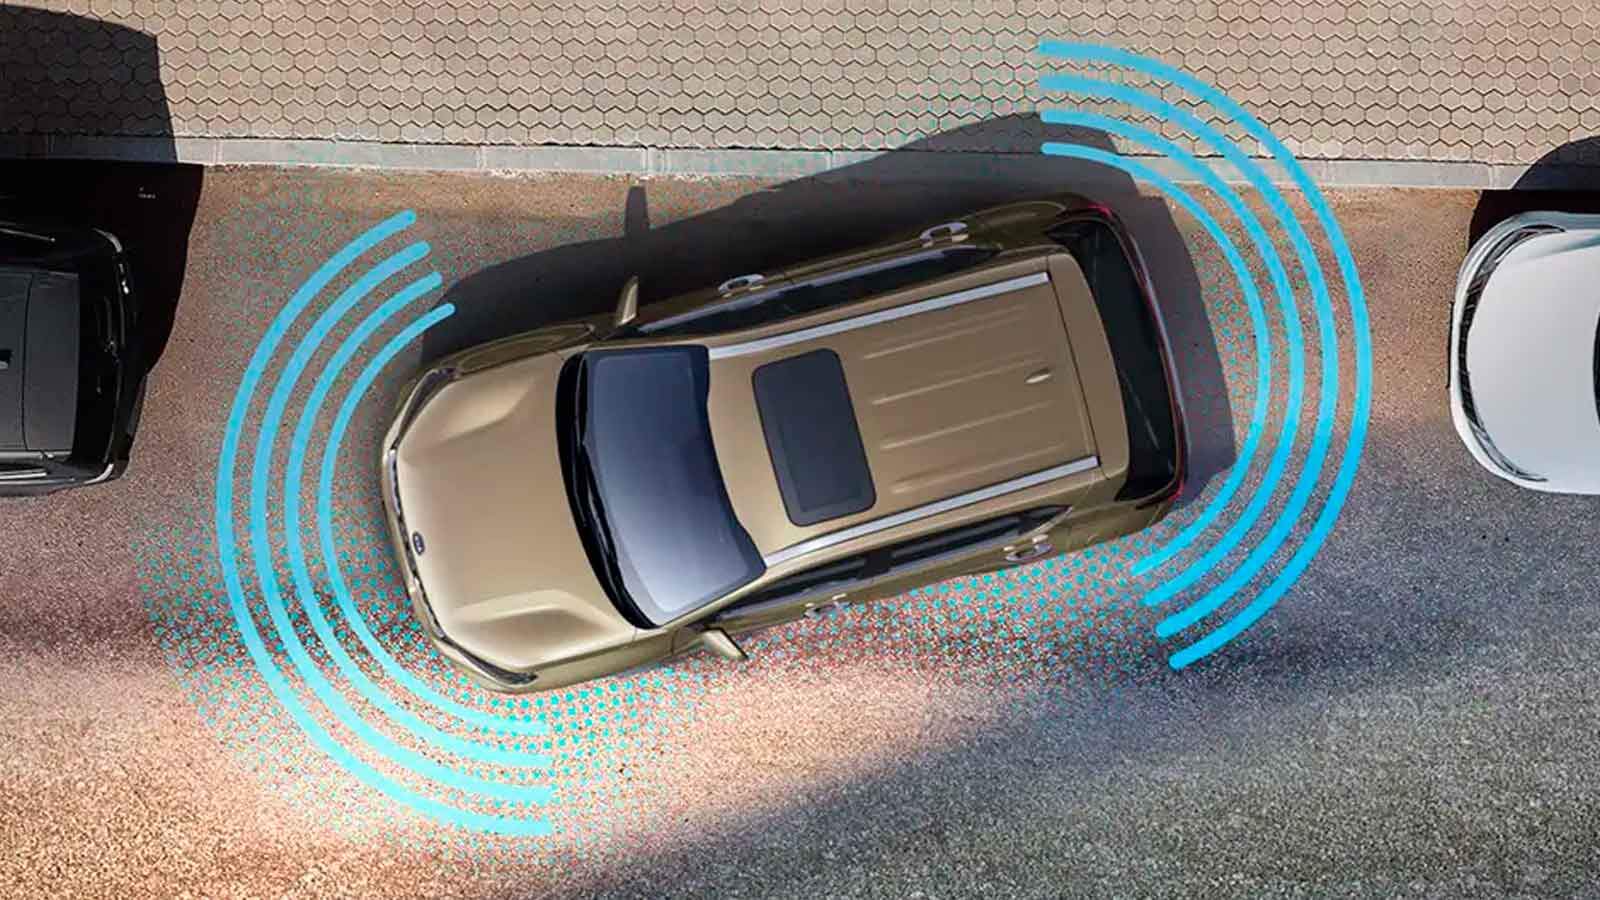 Cómo funciona el sensor de aparcamiento de los coches